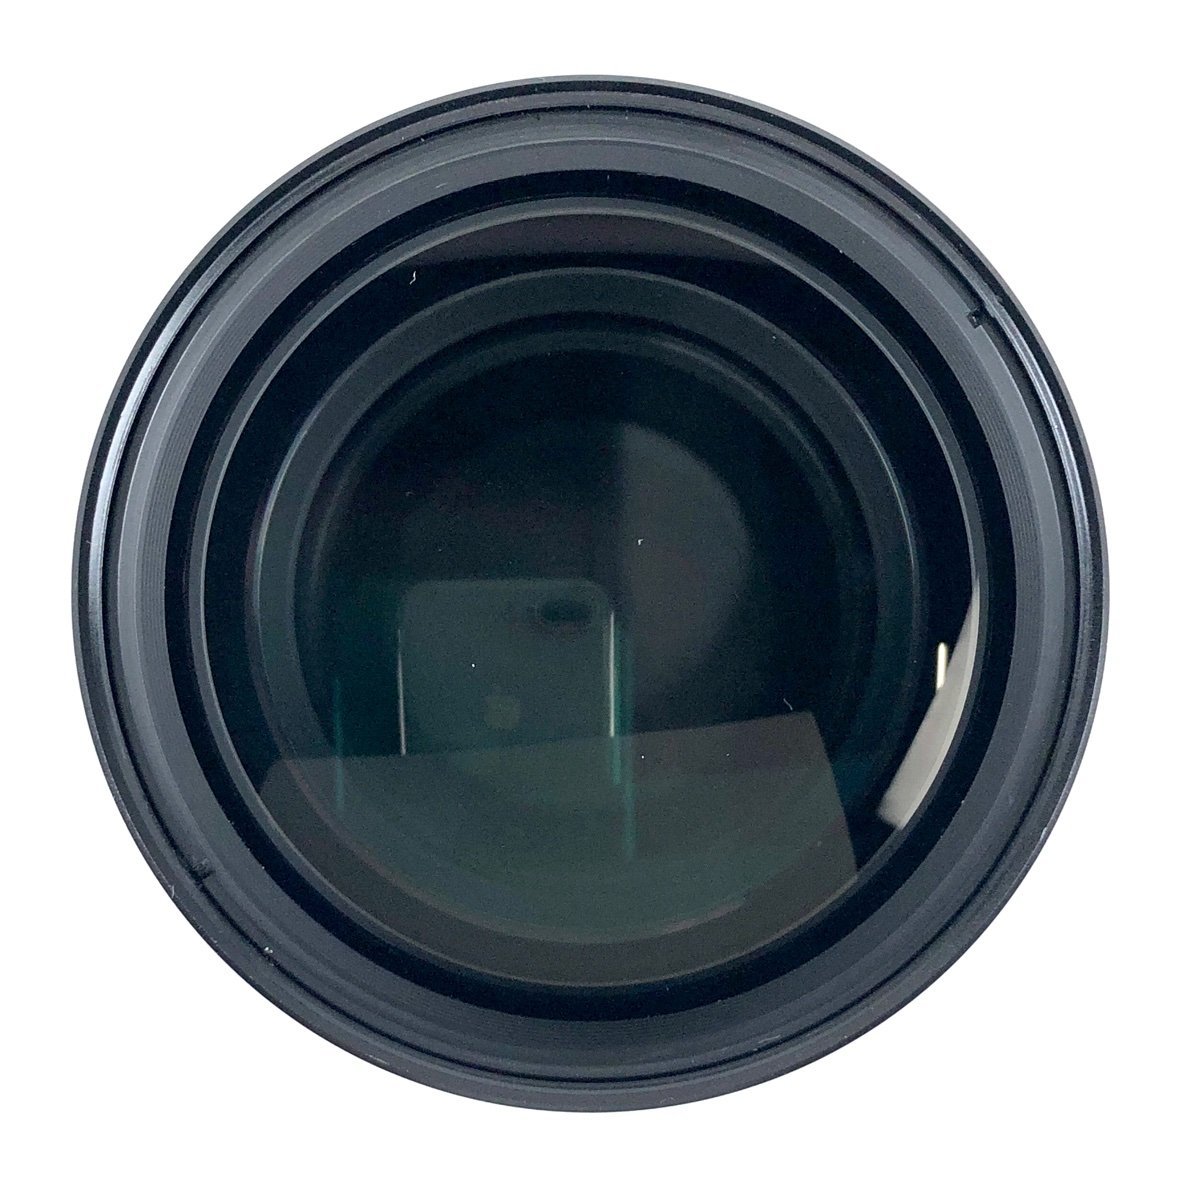 富士フイルム FUJIFILM FUJINON T 600mm F12 大判カメラ用レンズ 【中古】の画像5